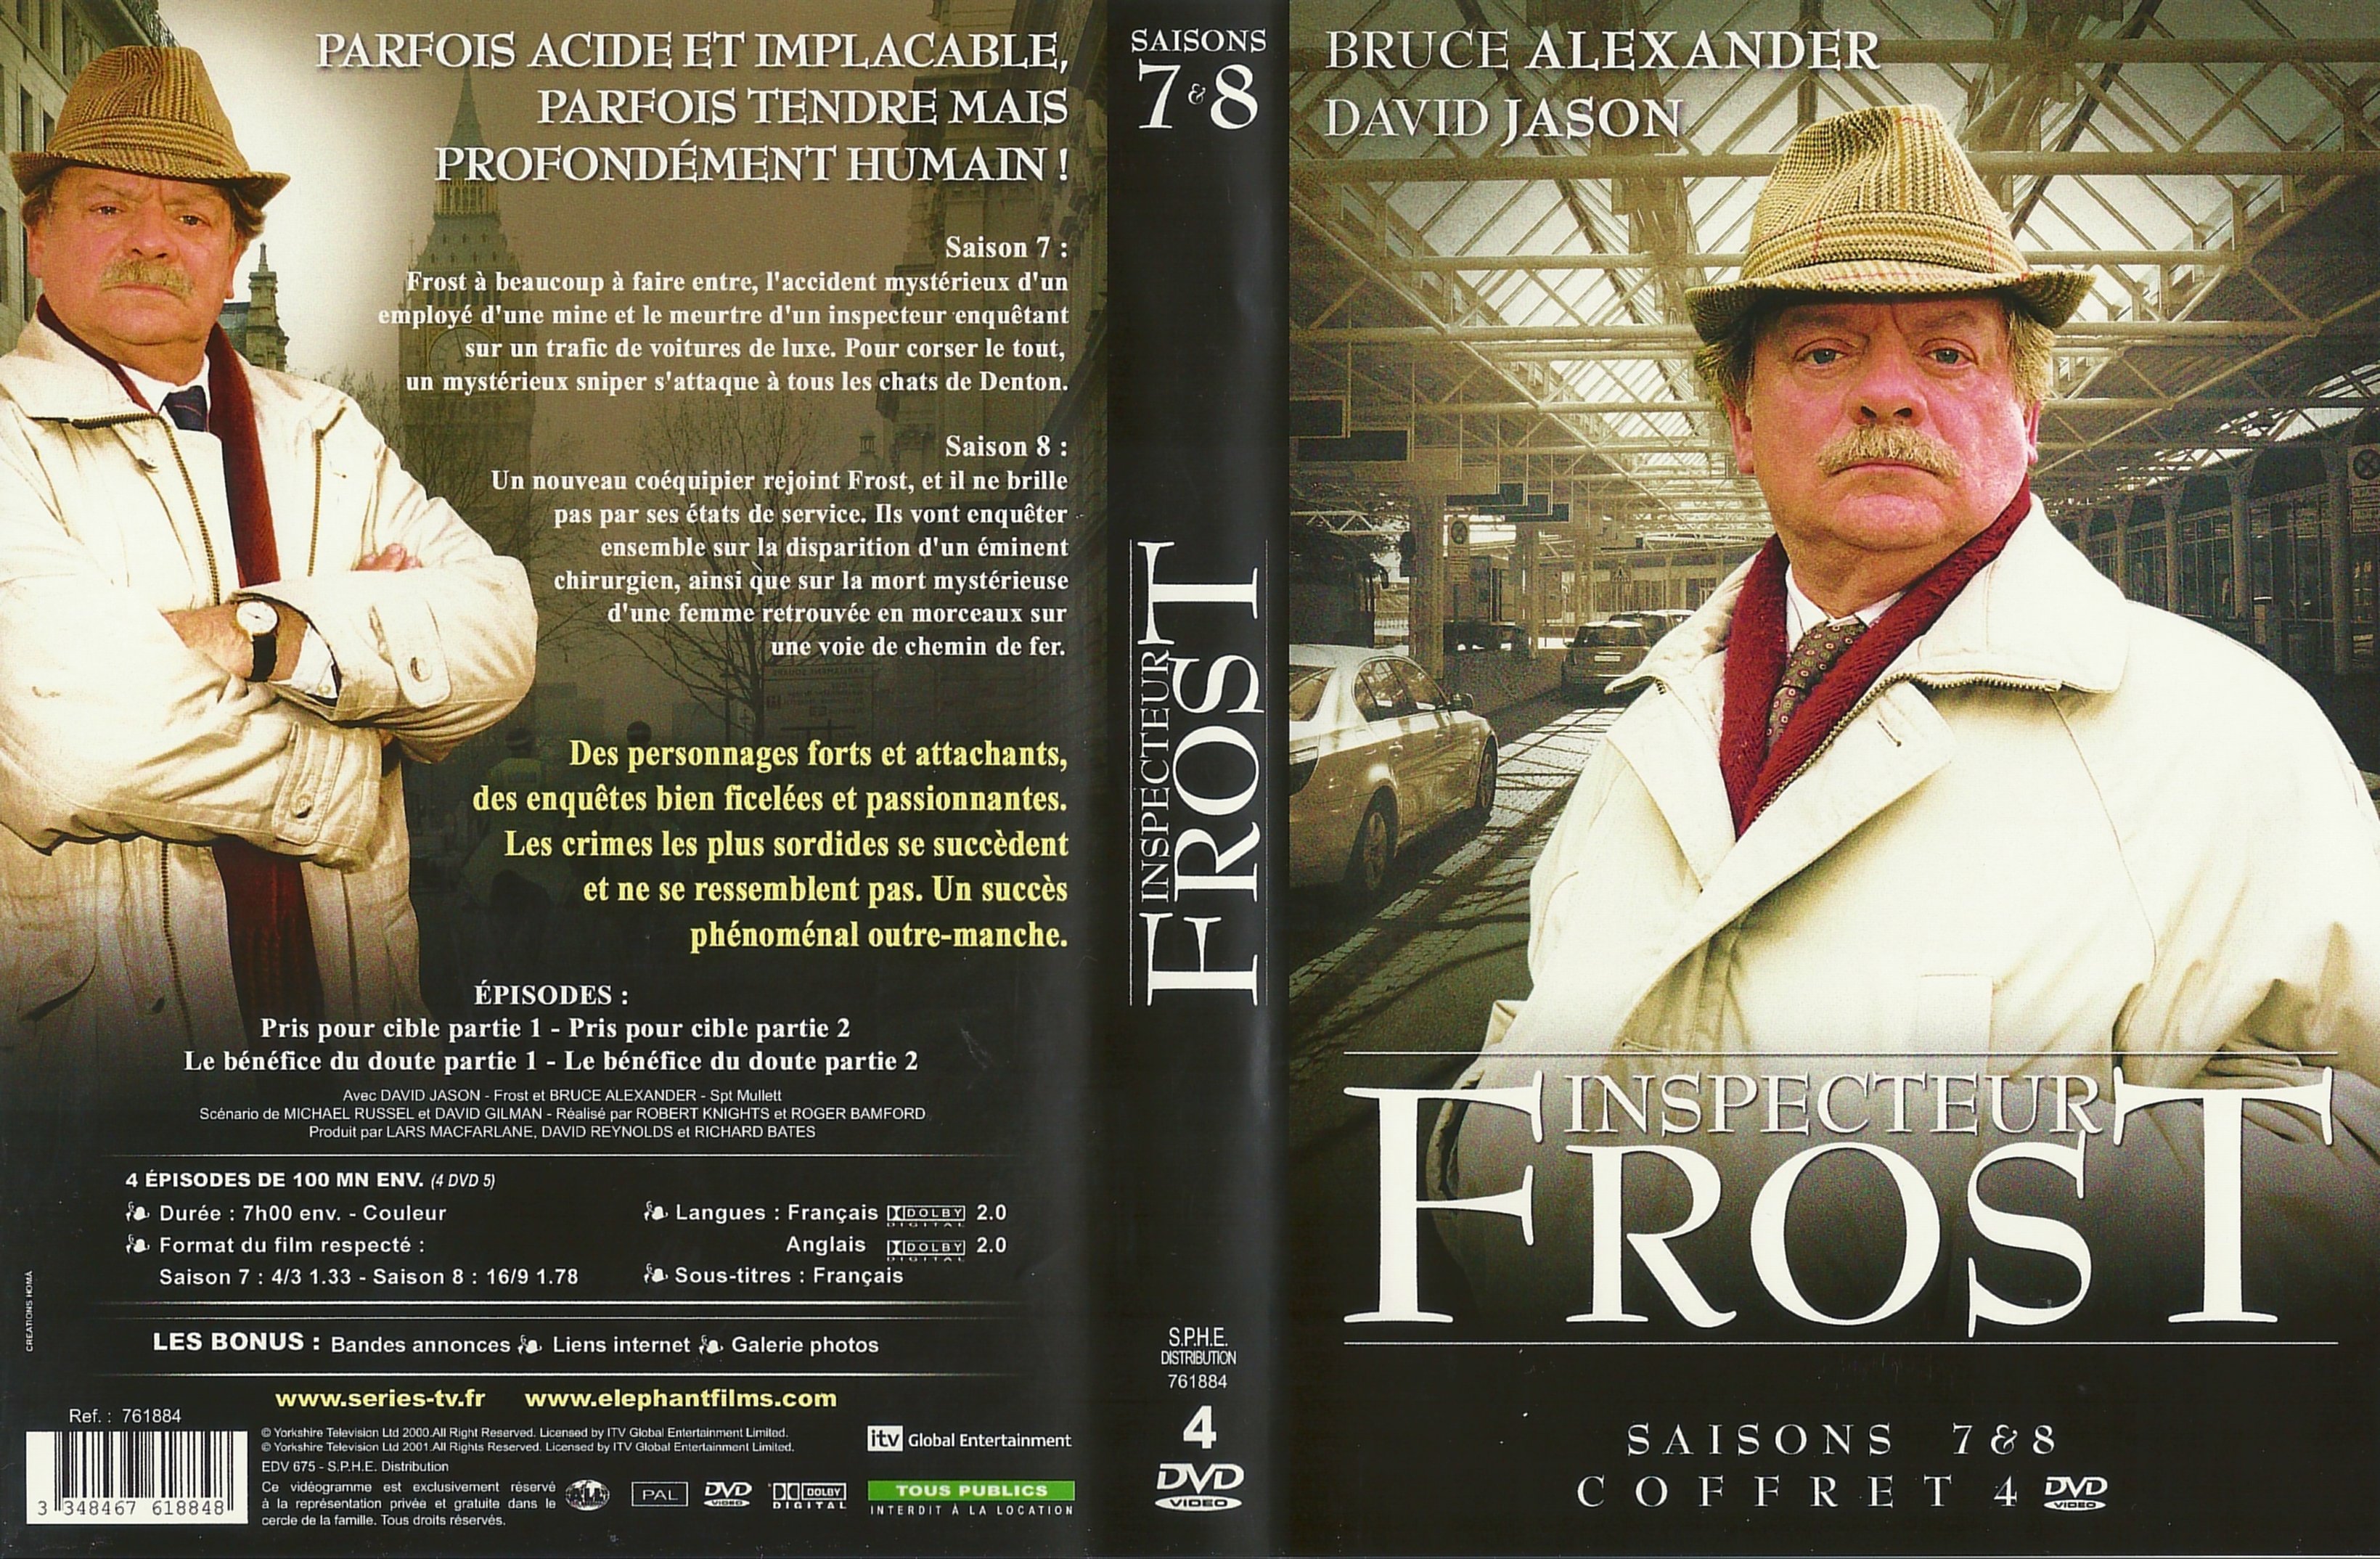 Jaquette DVD Inspecteur Frost Saison 7 et 8